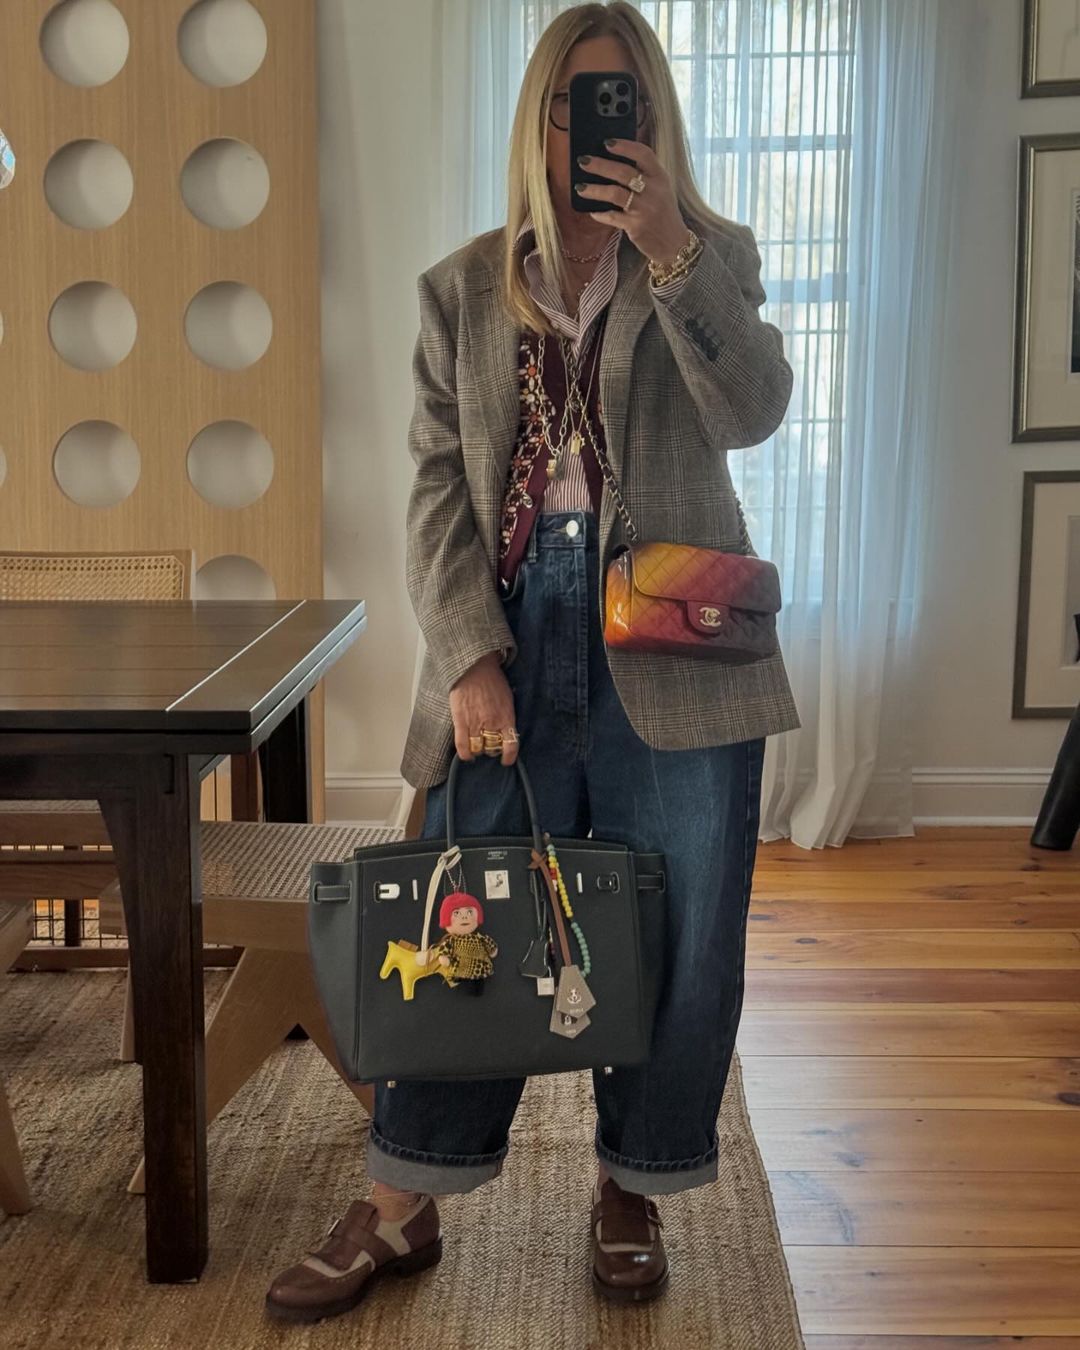 Lori Hirshleifer wearing bag charms